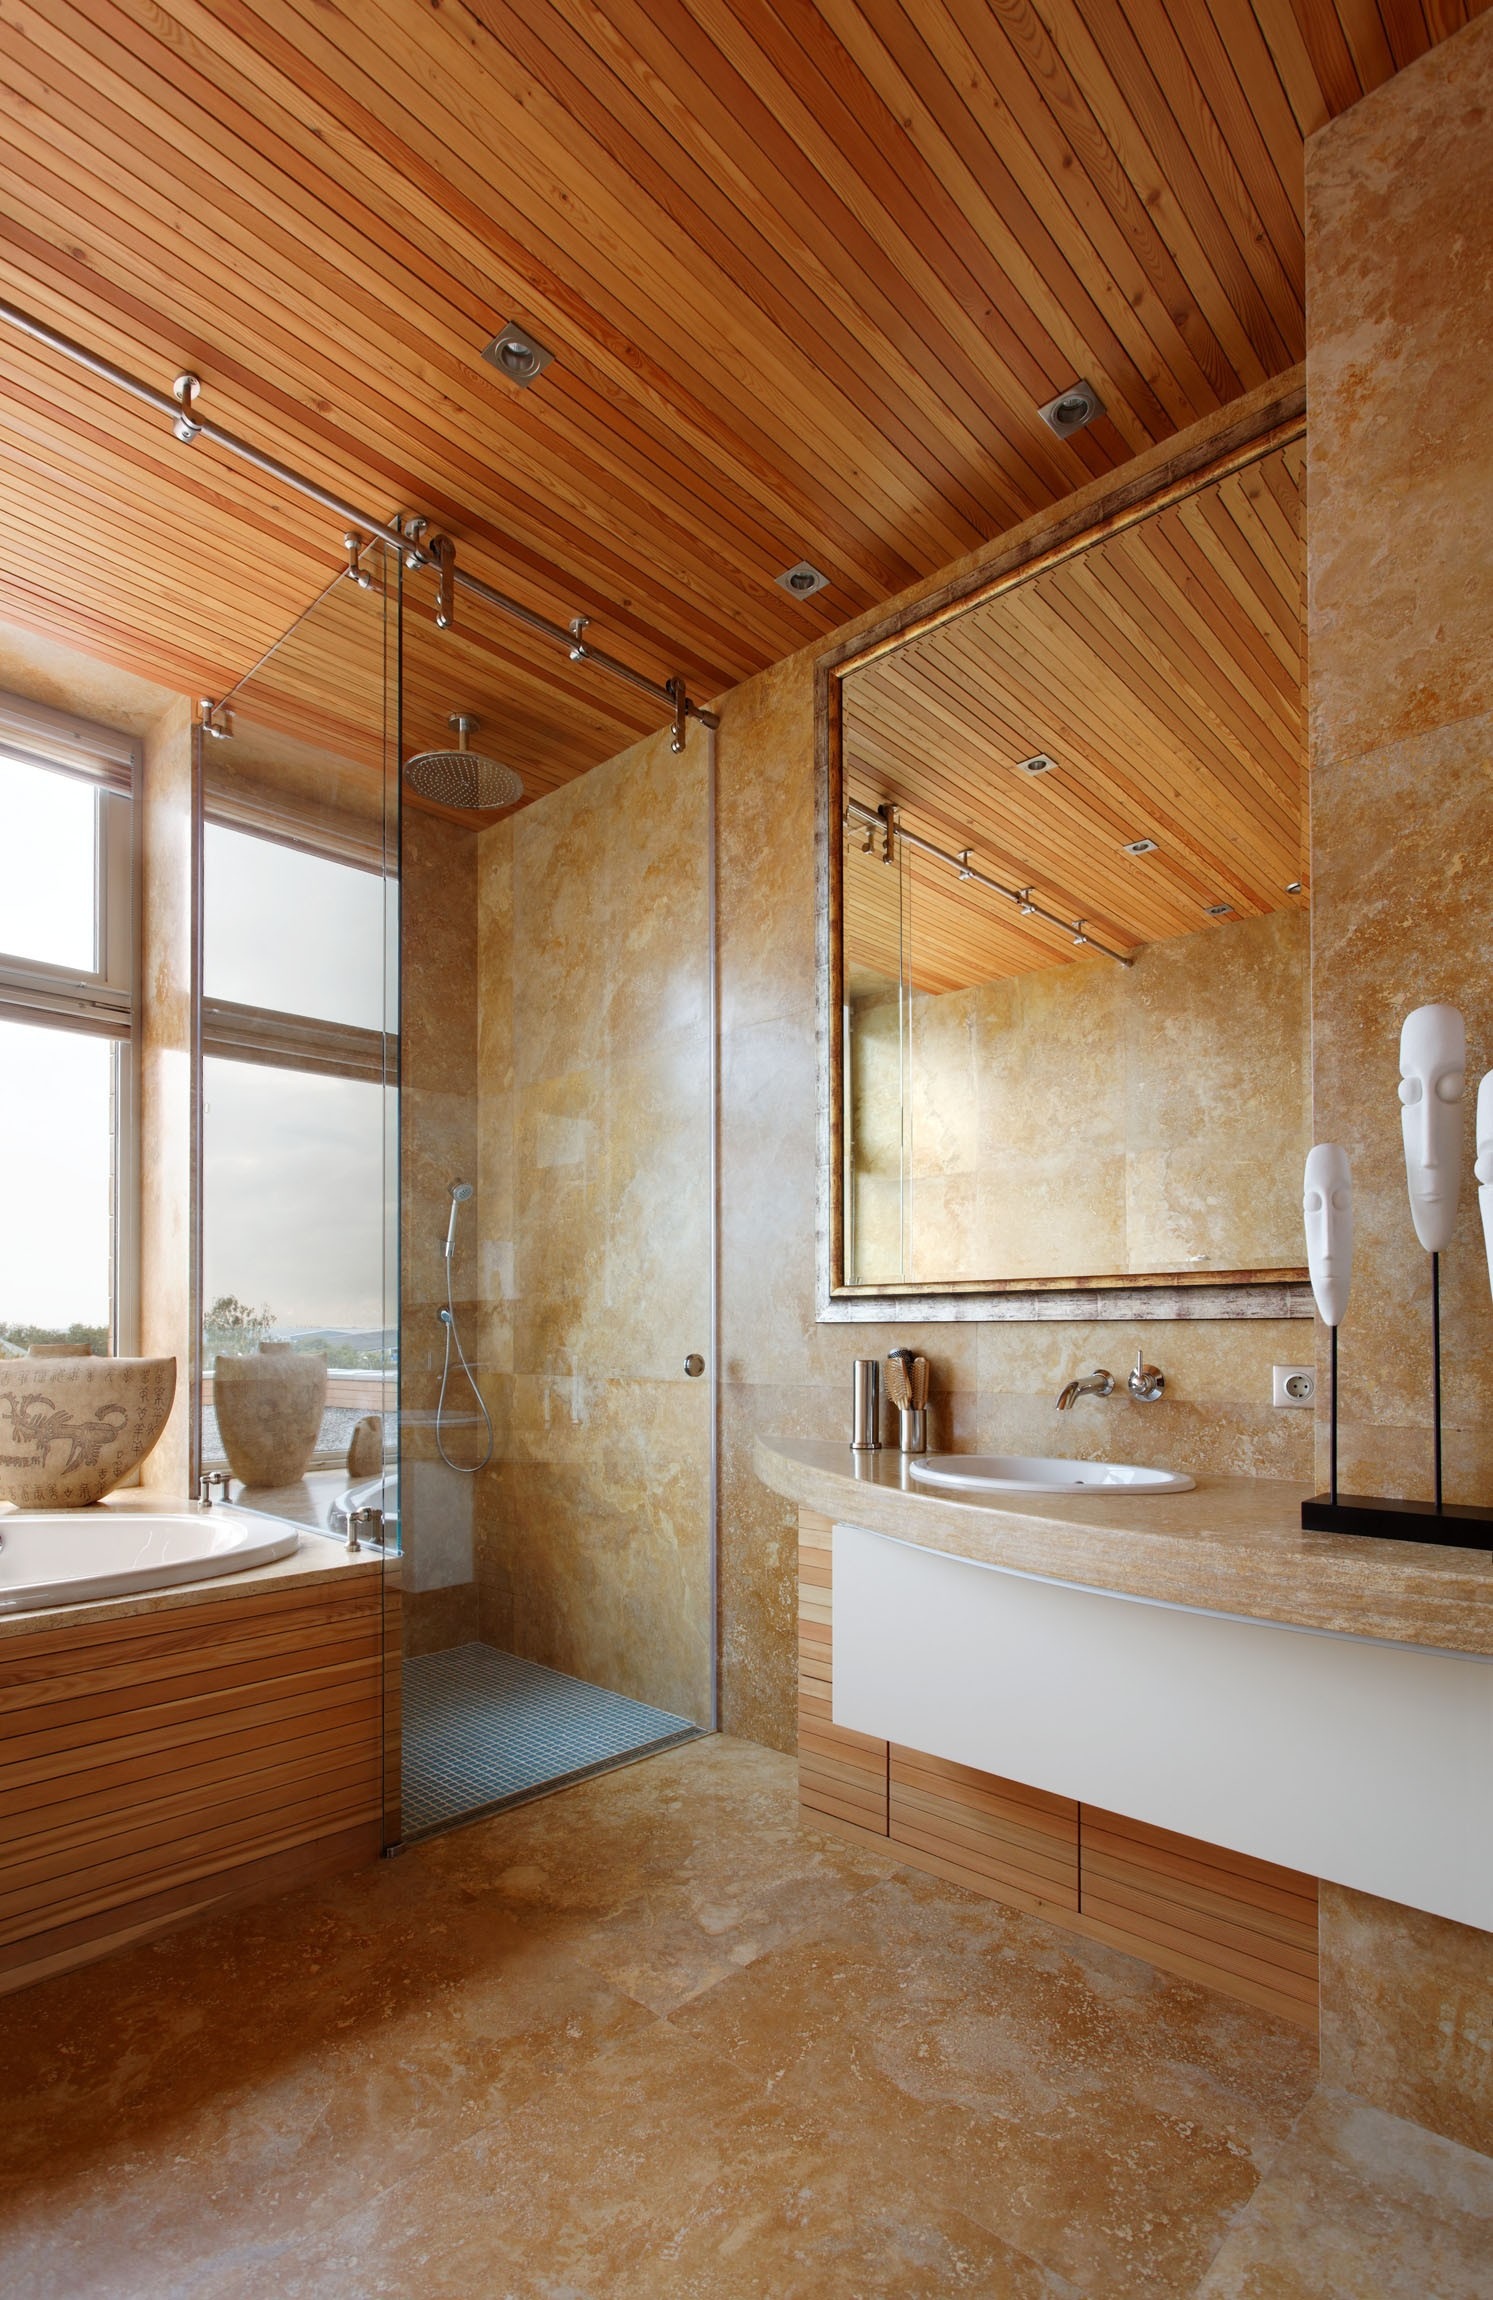 Shower house. Ванная в загородном доме. Потолок под дерево в ванной. Травертин и дерево в ванной. Деревянный потолок в ванной.